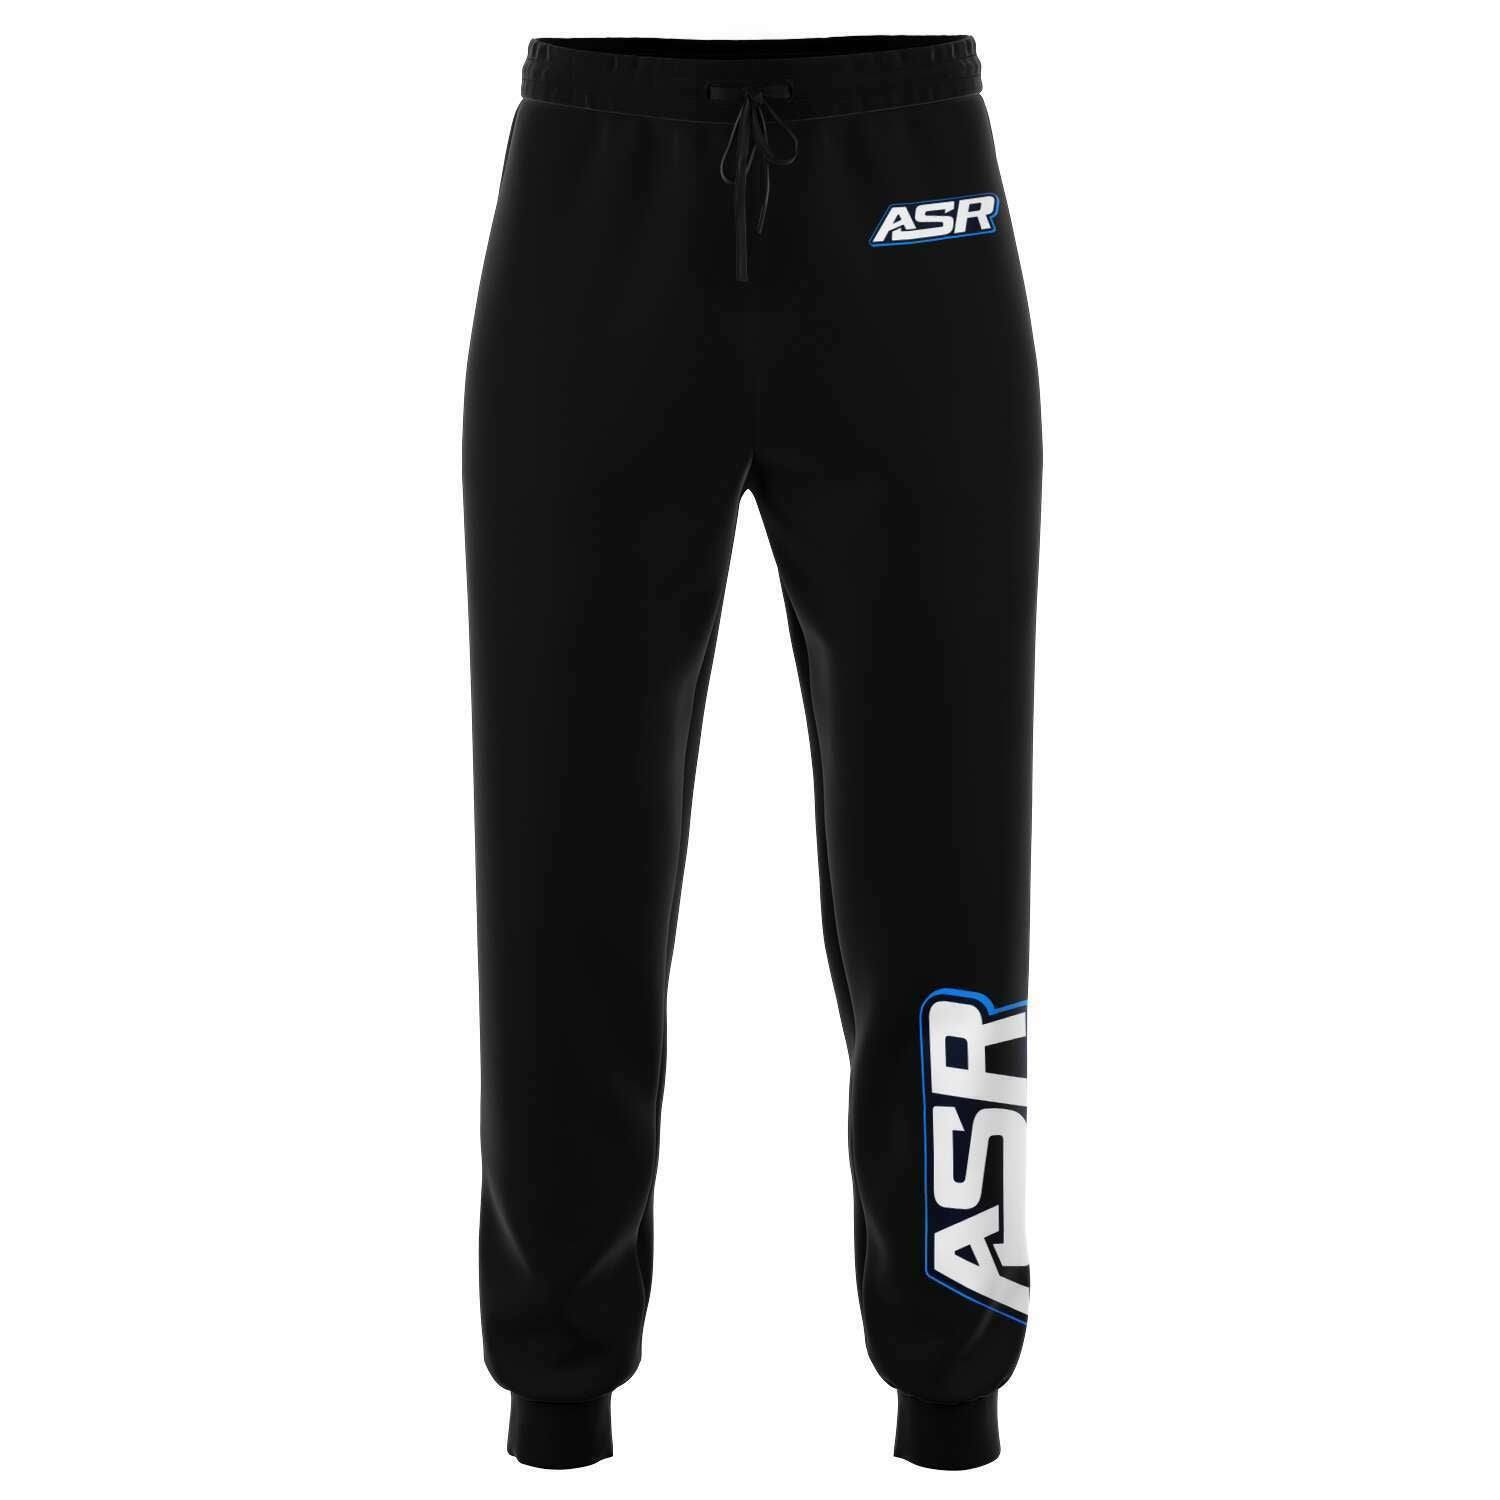 ASR Black Track Pants